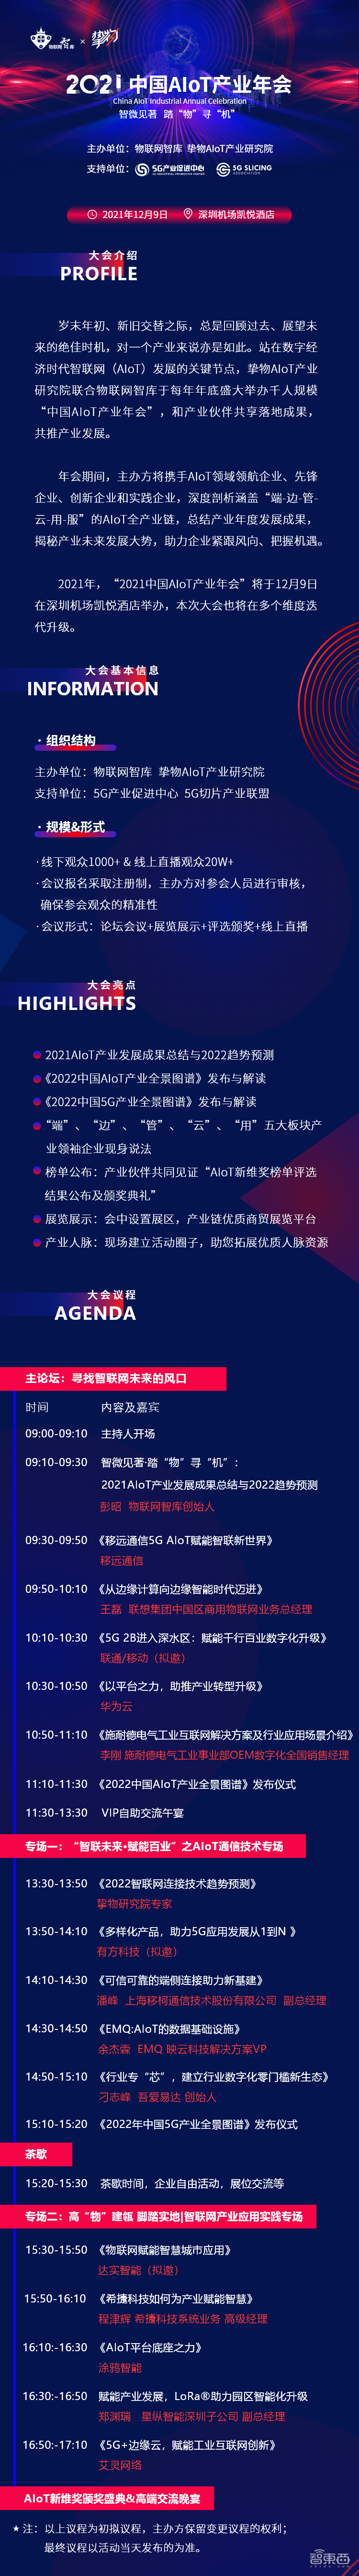 2021中国AIoT产业年会将于12月9日在深圳举办